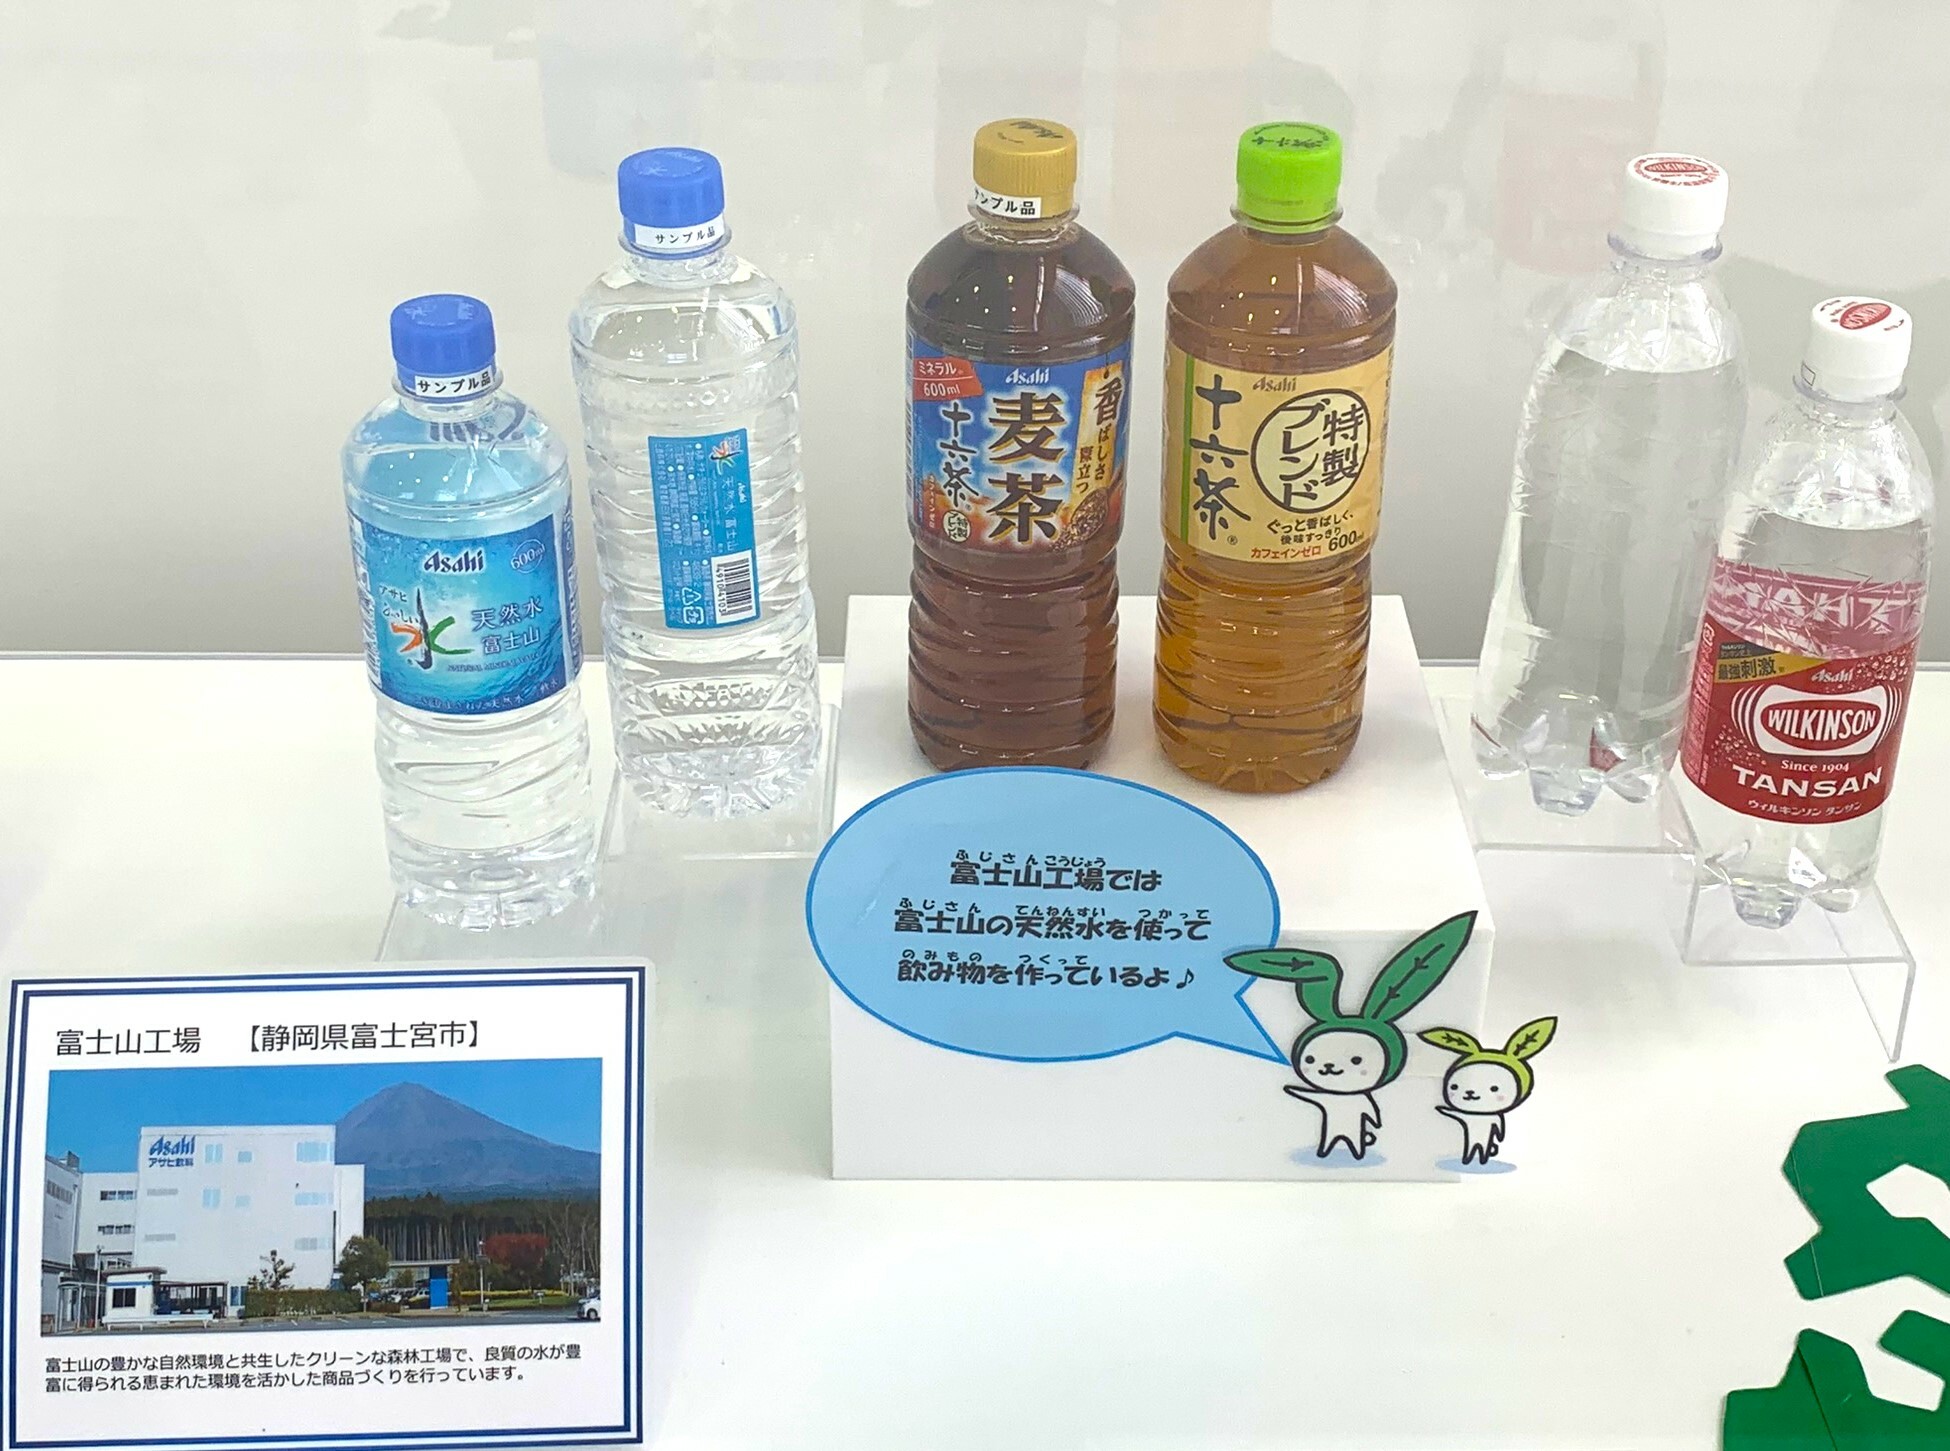 アサヒ飲料富士山工場で主に製造されている飲料